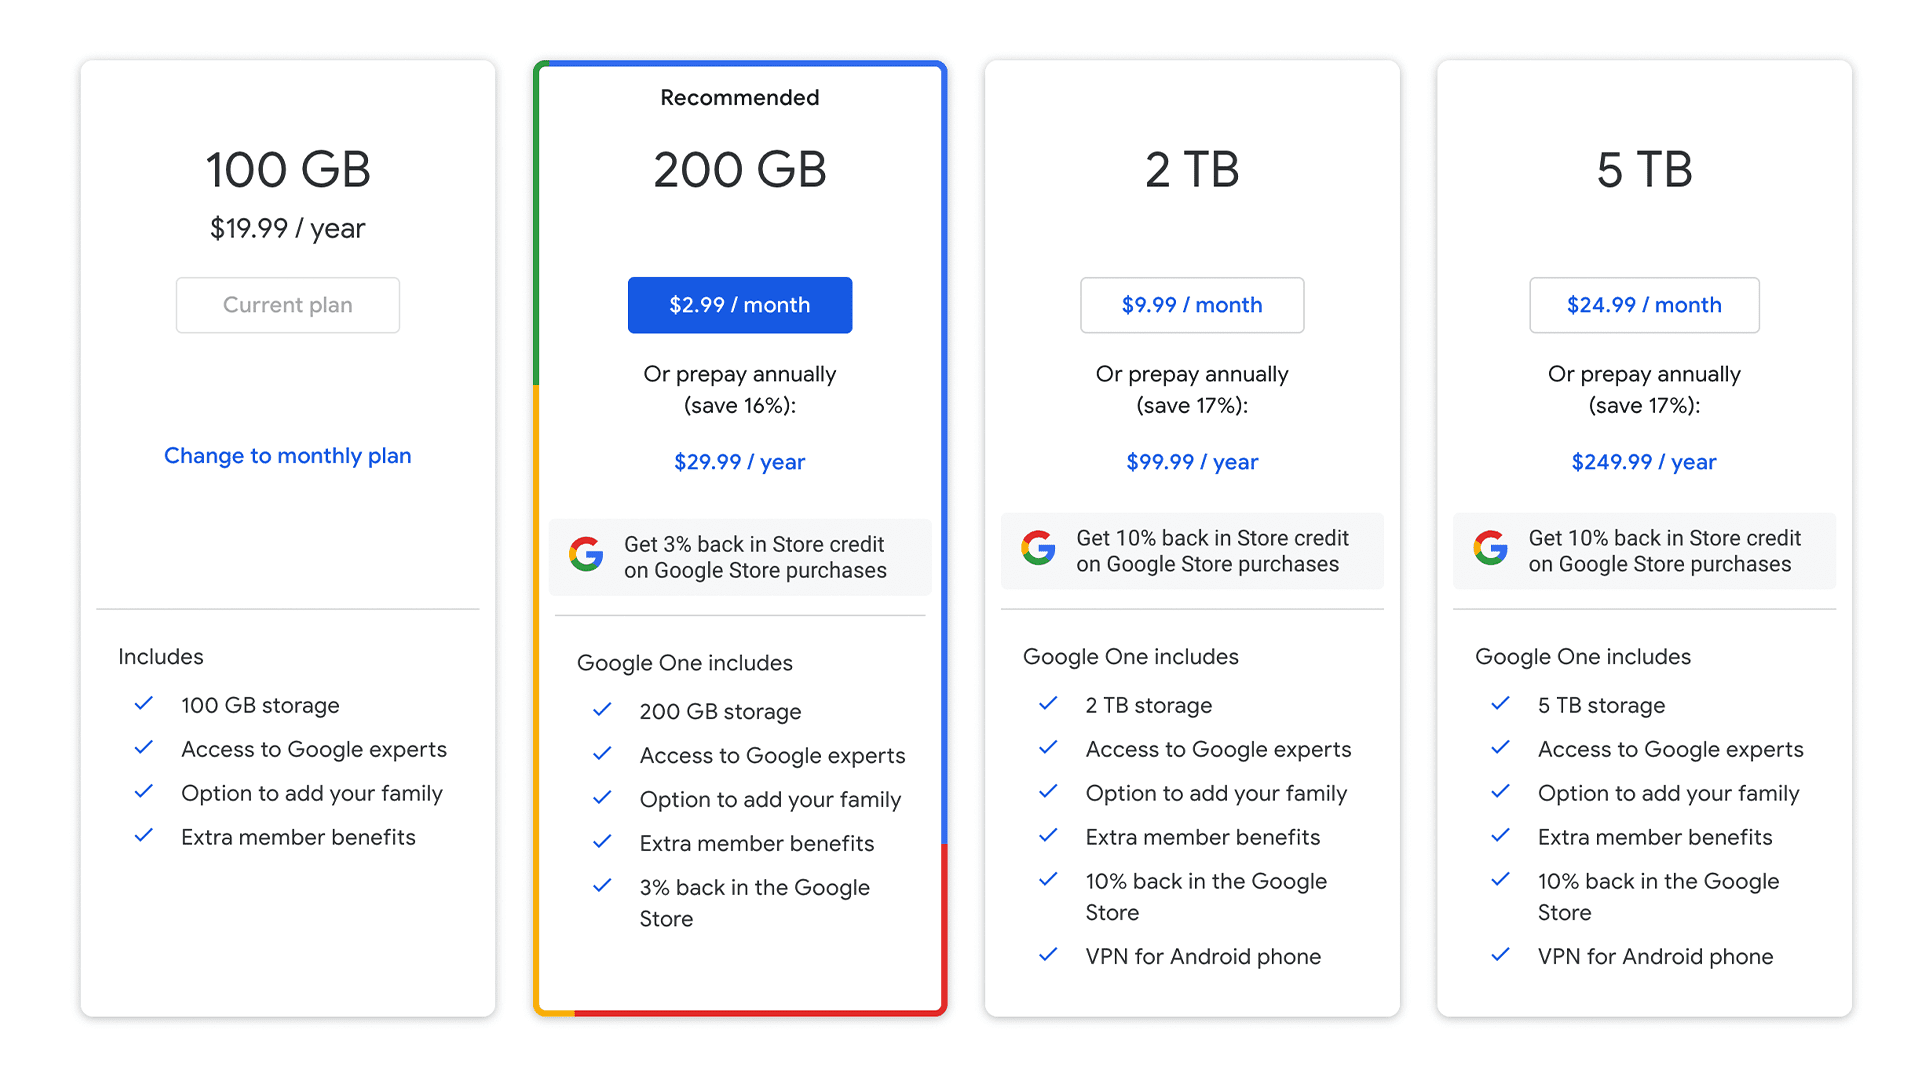 Gói lưu trữ đám mây 5TB mới của Google phải đủ cho bất kỳ ai